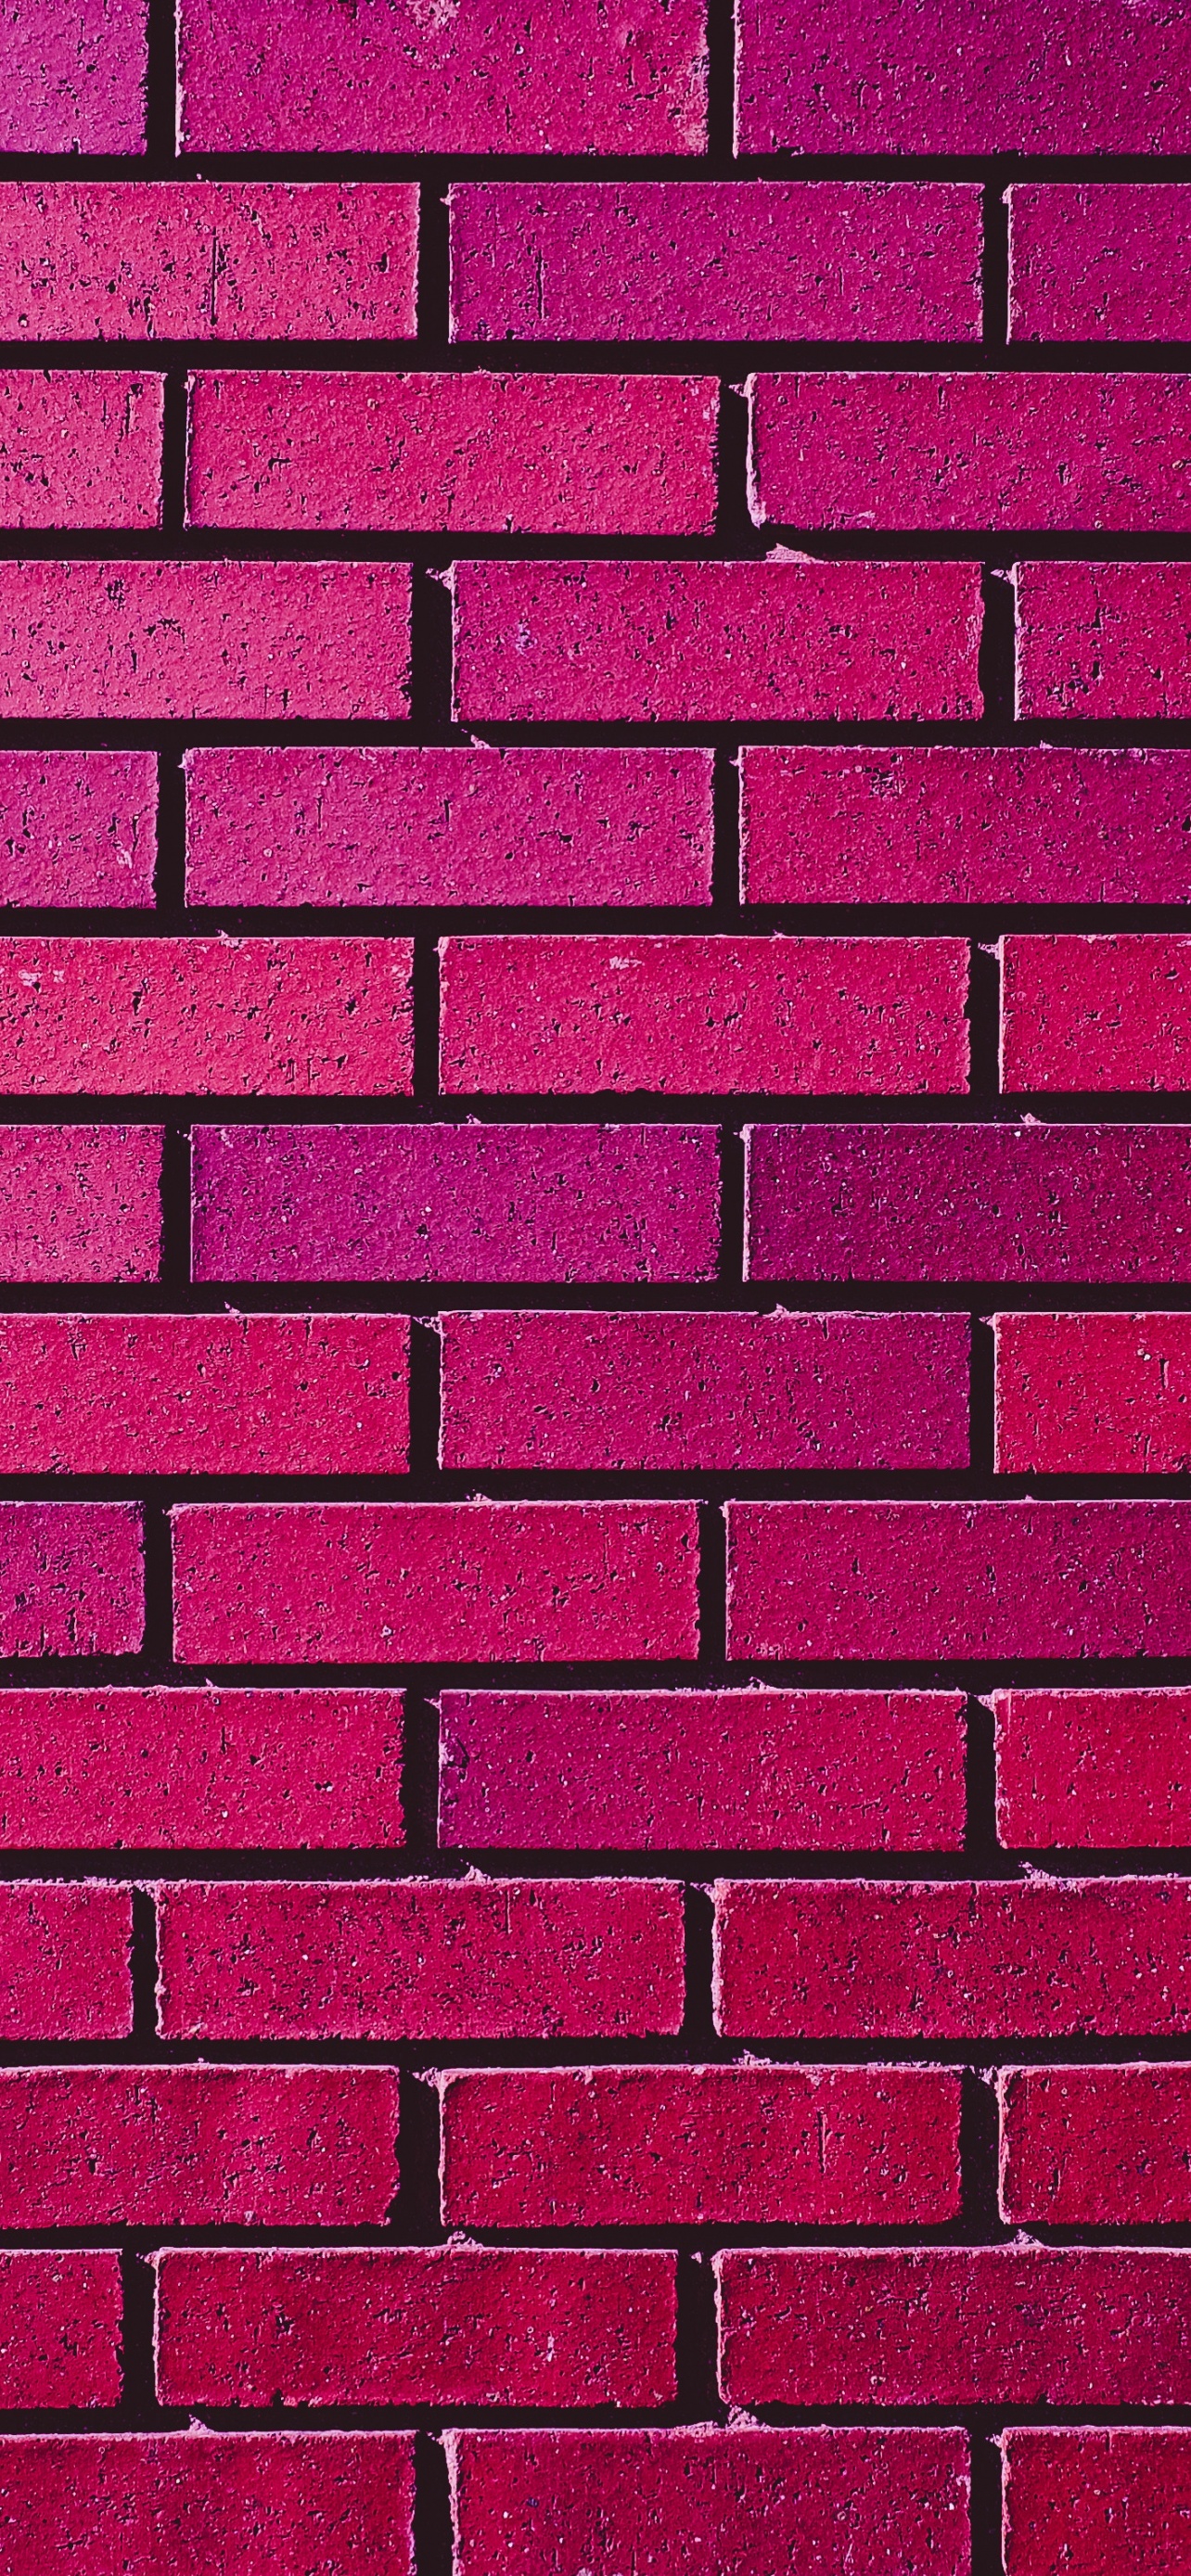 Brick wall 4K Wallpaper, Magenta, Red, Bricks, Bright, Gradients, 5K